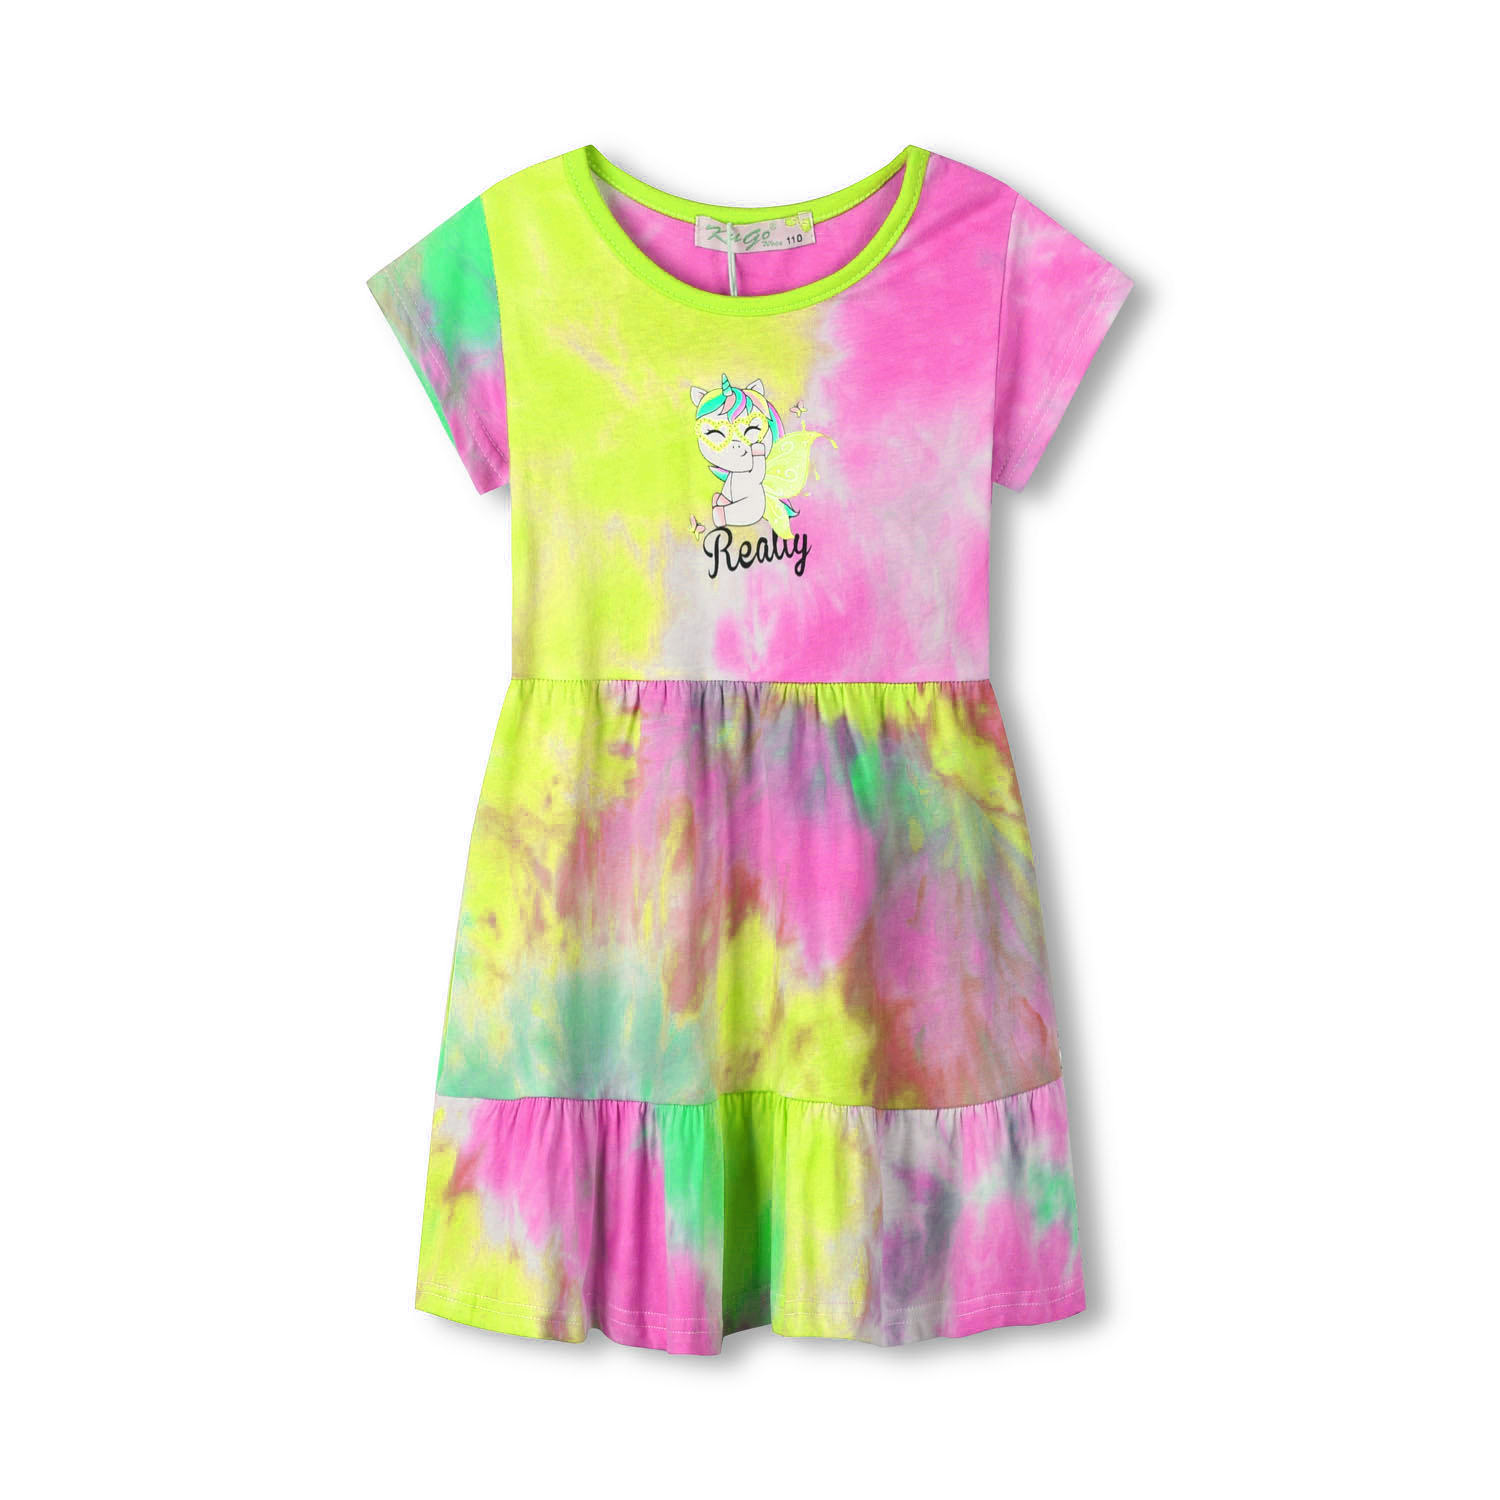 Dívčí šaty - KUGO TM7216, tyrkysová/ žlutá/ růžová Barva: Mix barev, Velikost: 98